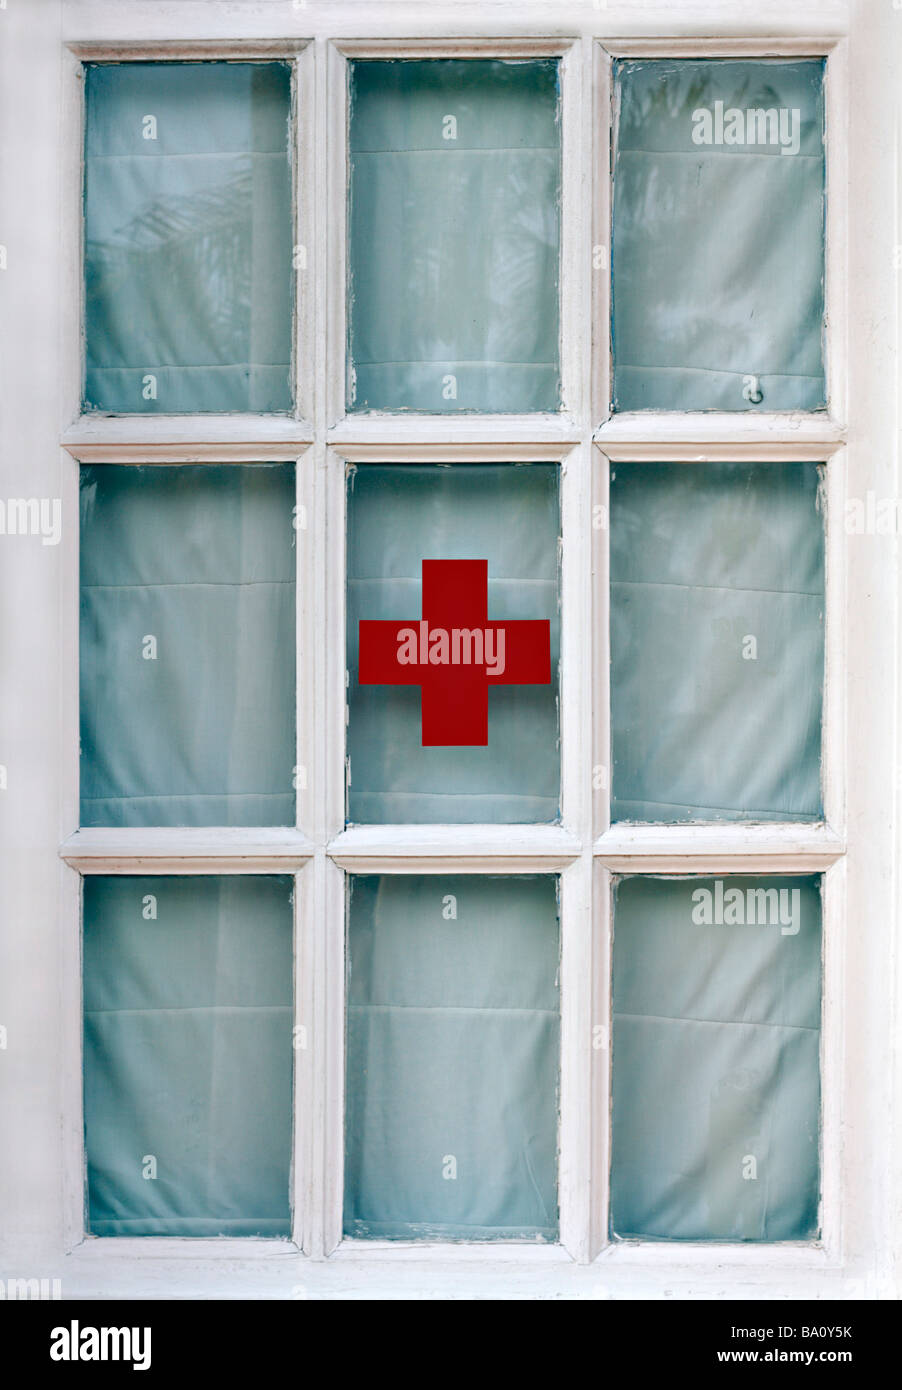 Fenster mit Rotes Kreuz Zeichen xxxxx Stock Photo